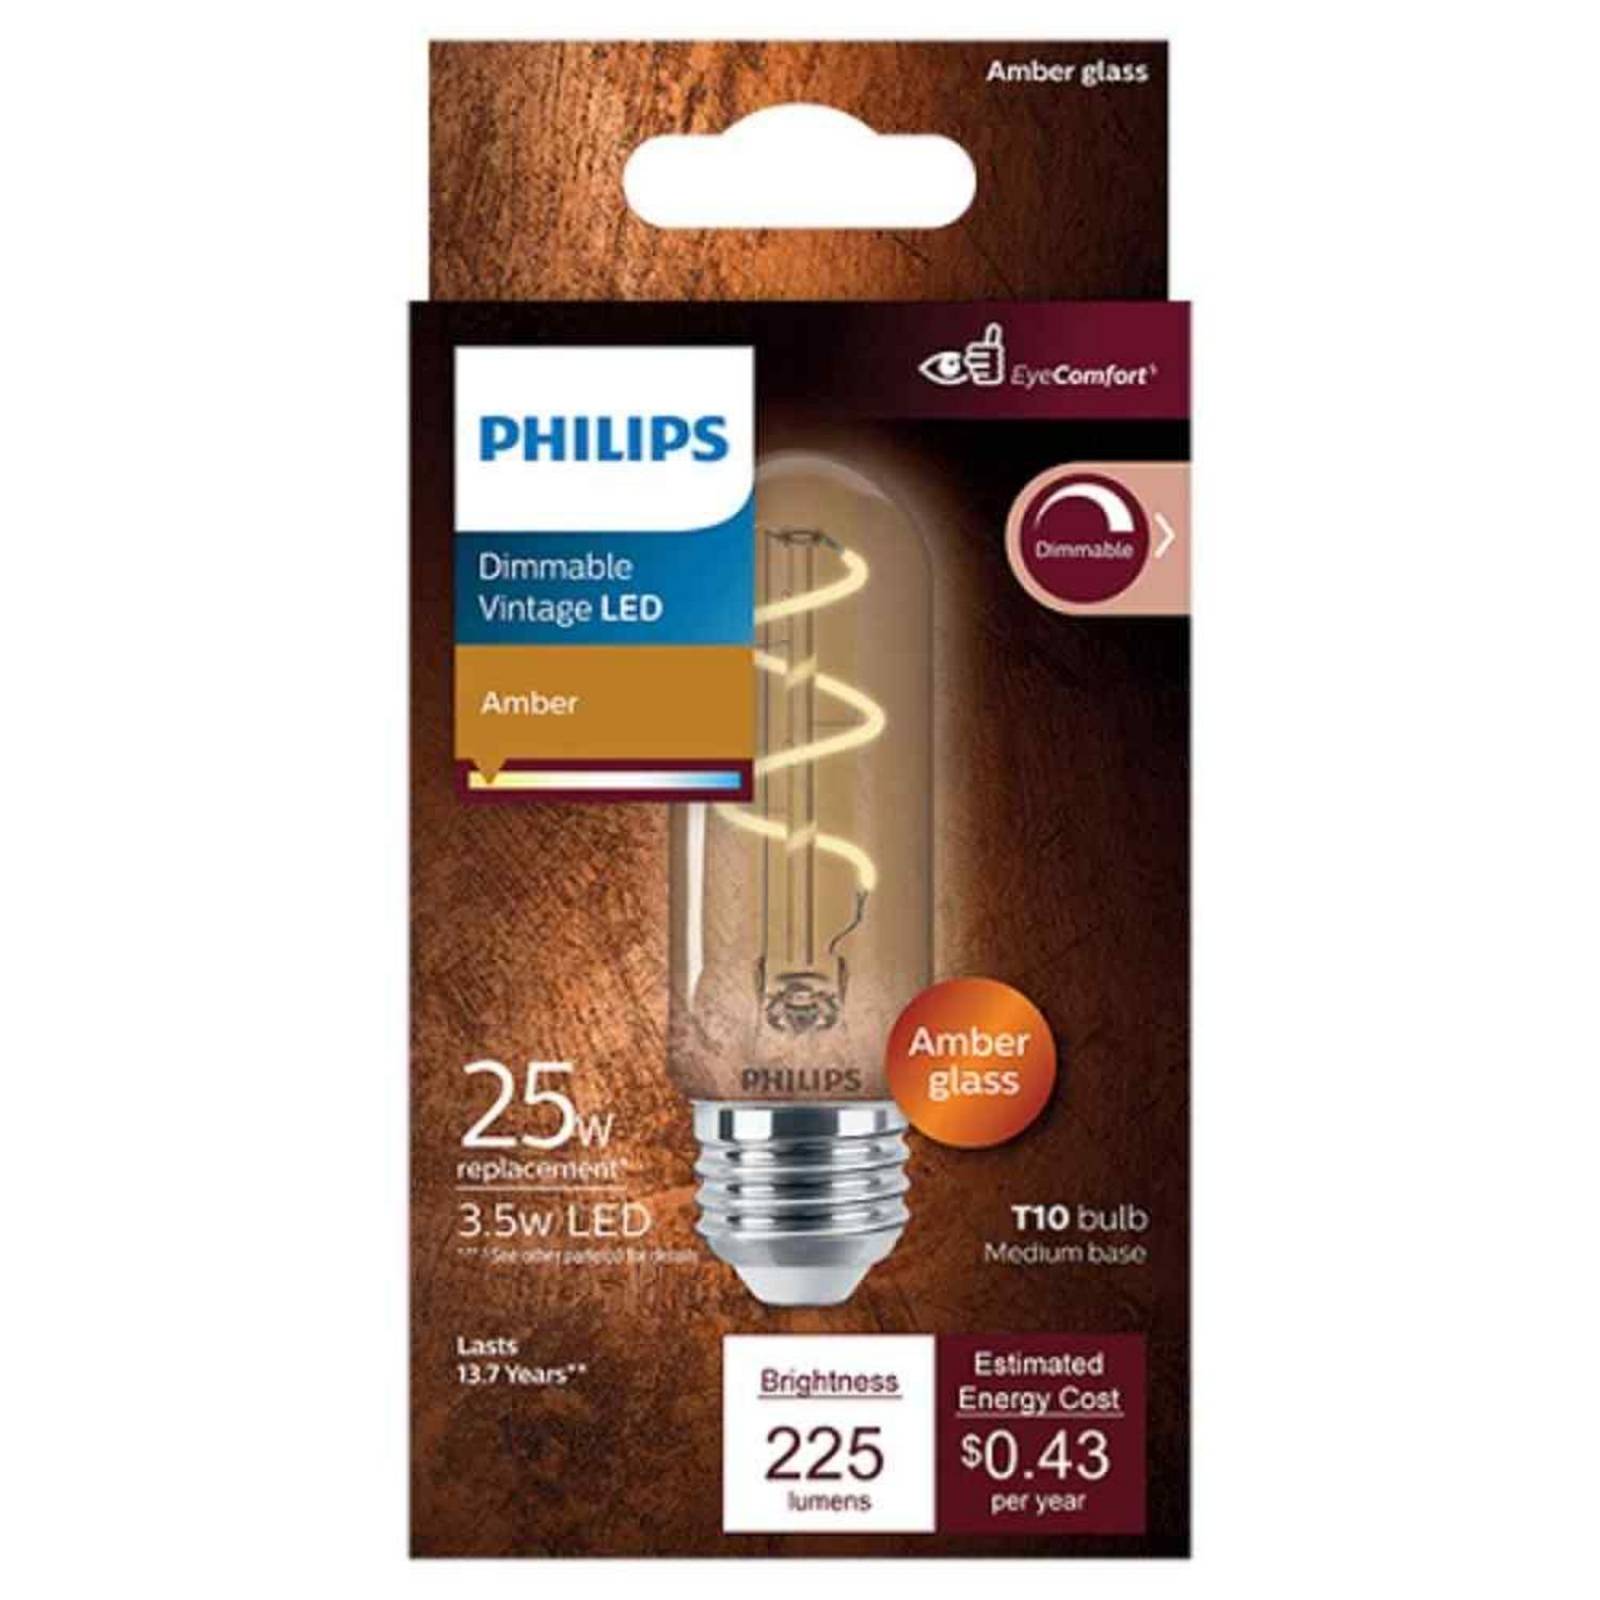 La clásica bombilla de Philips ahora inteligente y tecnología LED